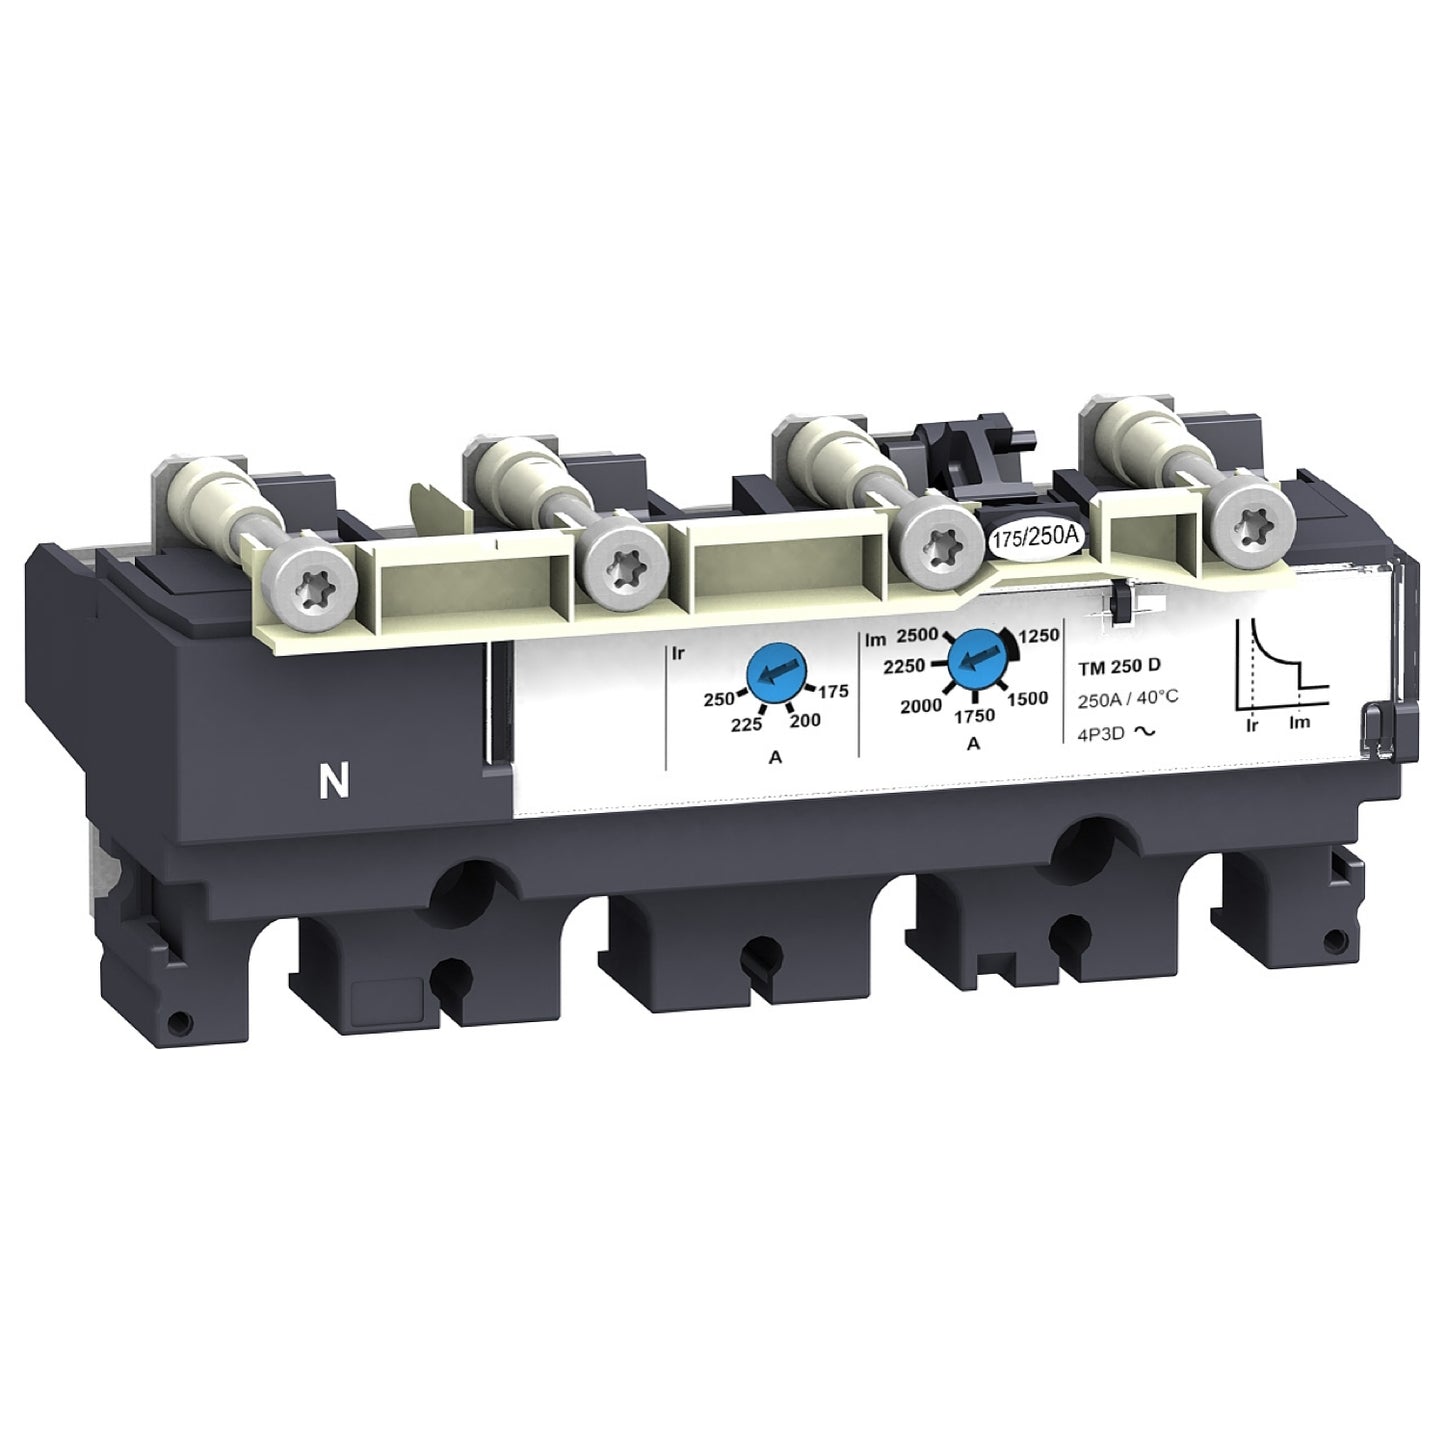 LV431440 Trip unit TM250D for NSX250 circuit breakers